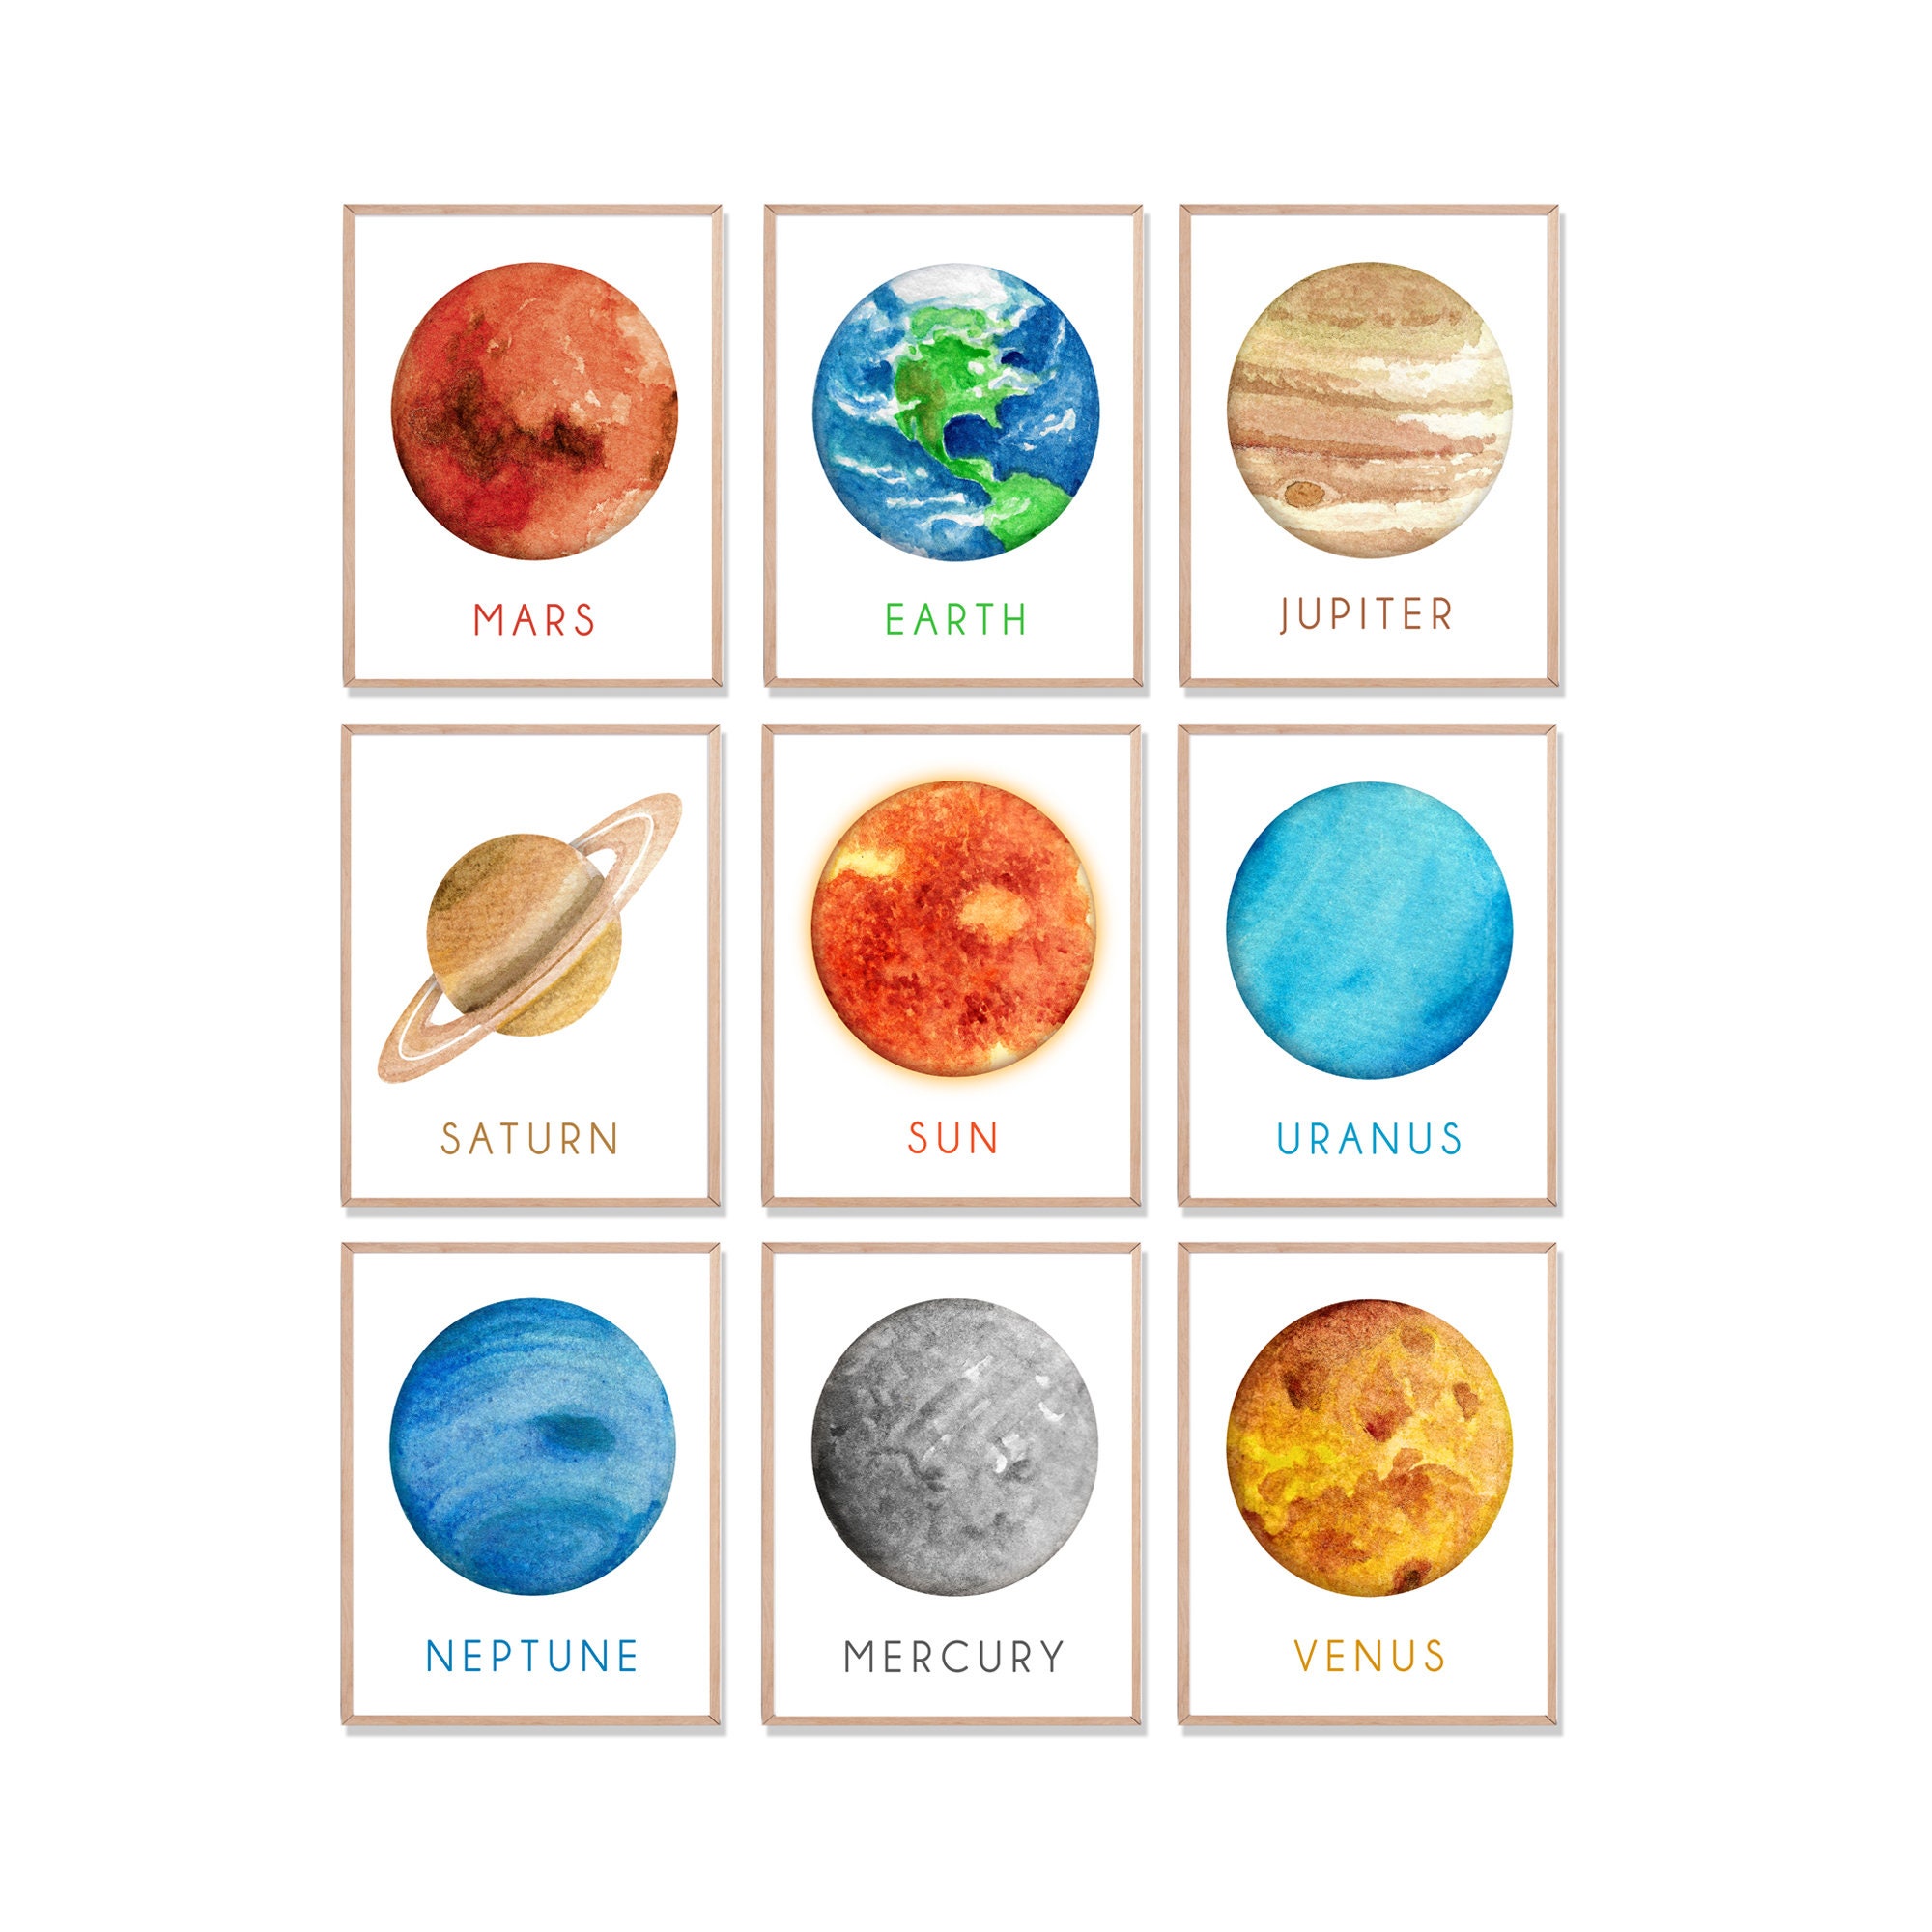 Планеты распечатать цветные. Планеты для распечатки. Планеты сахарная печать. Планеты солнечной системы для печати. Планеты солнечной системы для детей картинки.